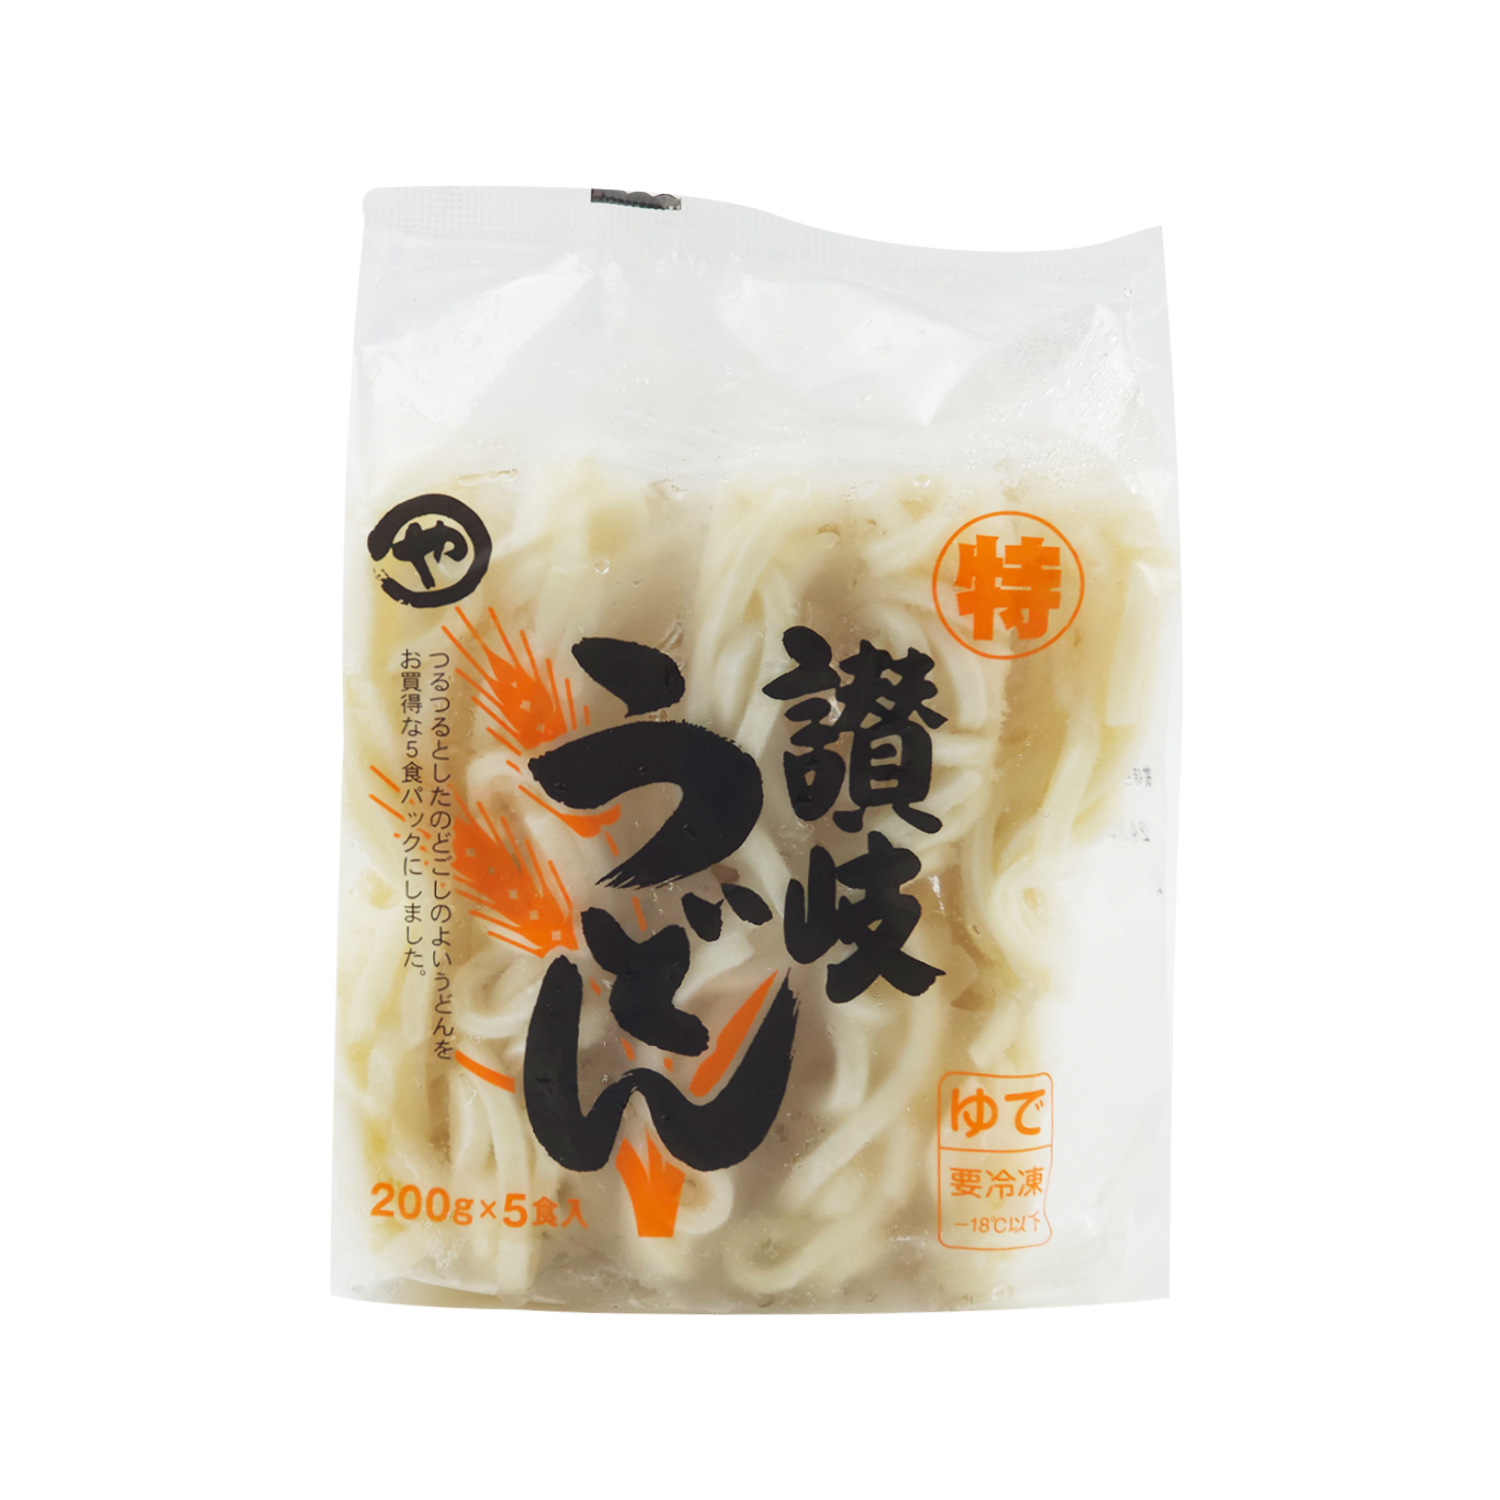 Frozen Yamhiro Sanuki Udon Noodles 200g*5-eBest-Noodles,Frozen food